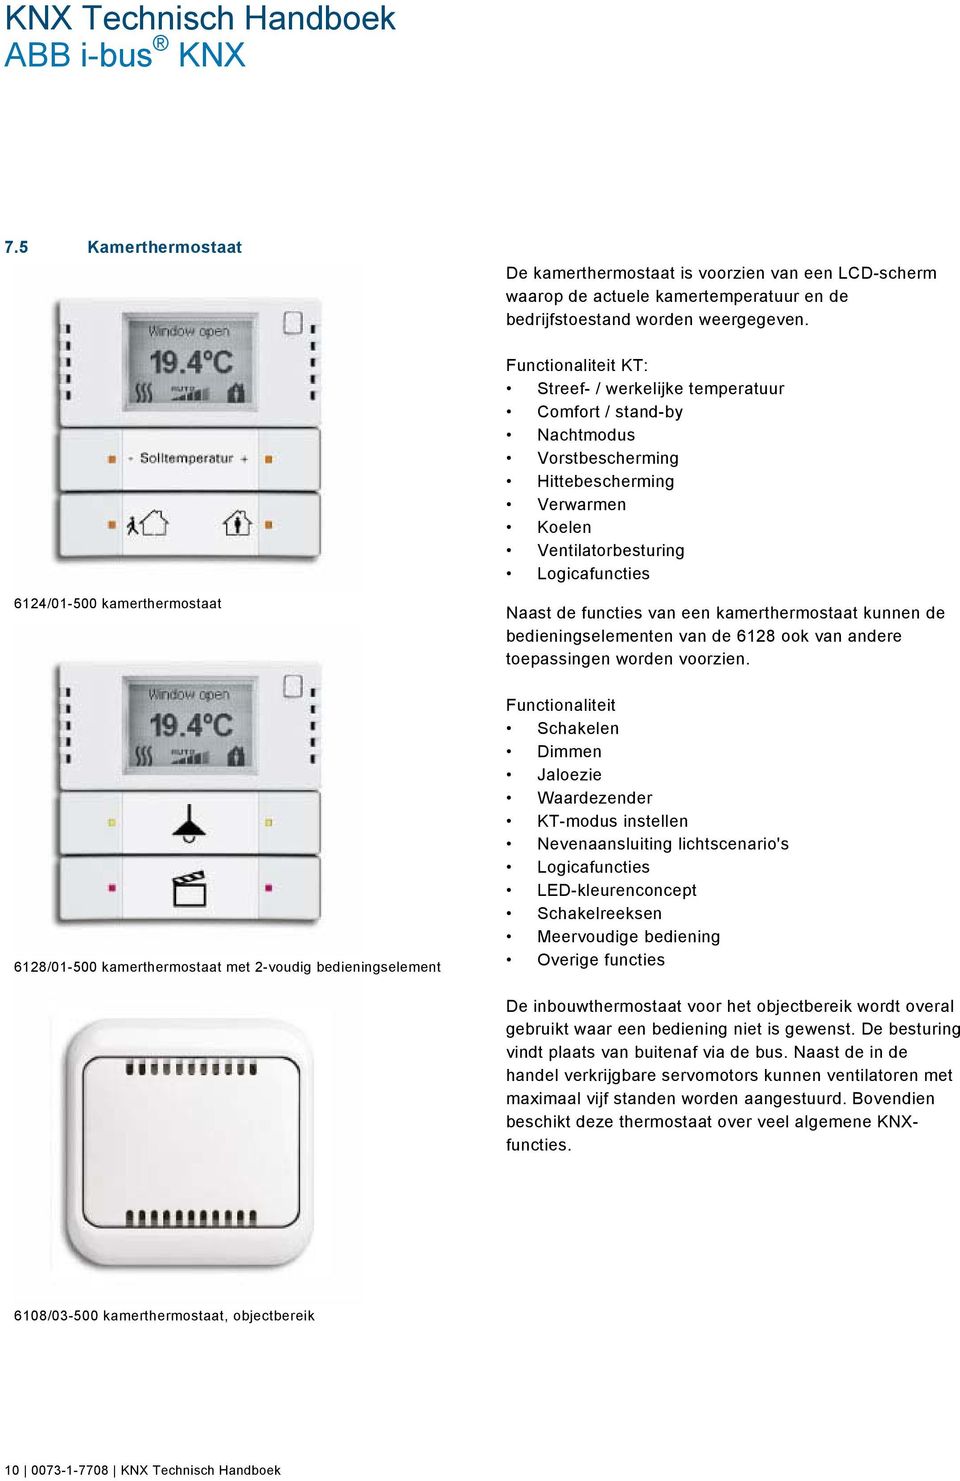 Naast de functies van een kamerthermostaat kunnen de bedieningselementen van de 6128 ook van andere toepassingen worden voorzien.